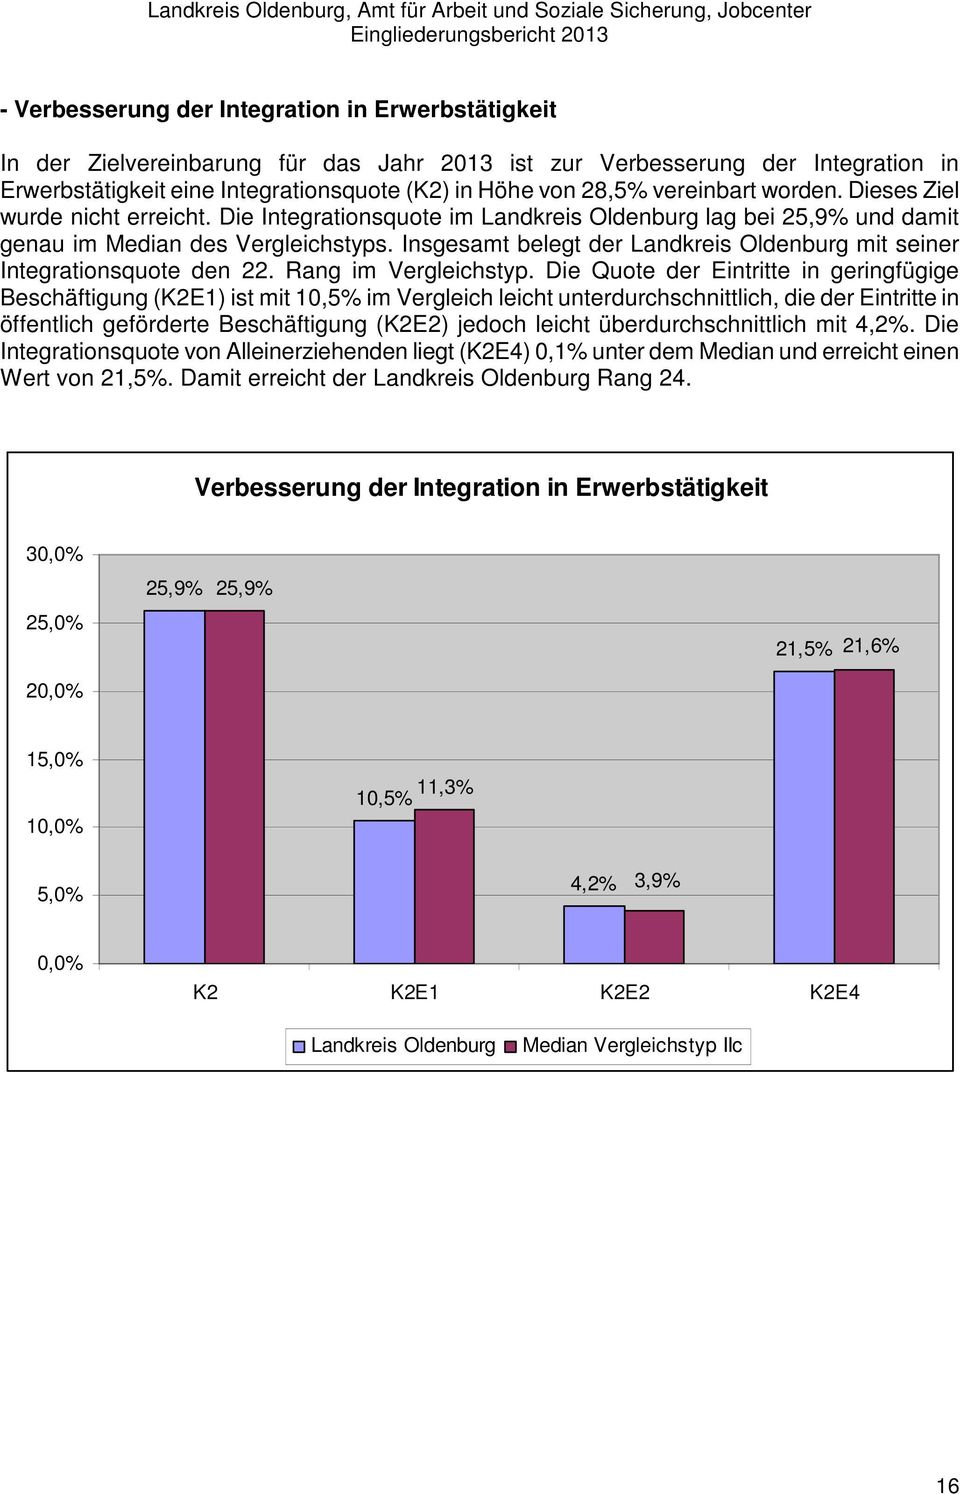 Insgesamt belegt der Landkreis Oldenburg mit seiner Integrationsquote den 22. Rang im Vergleichstyp.